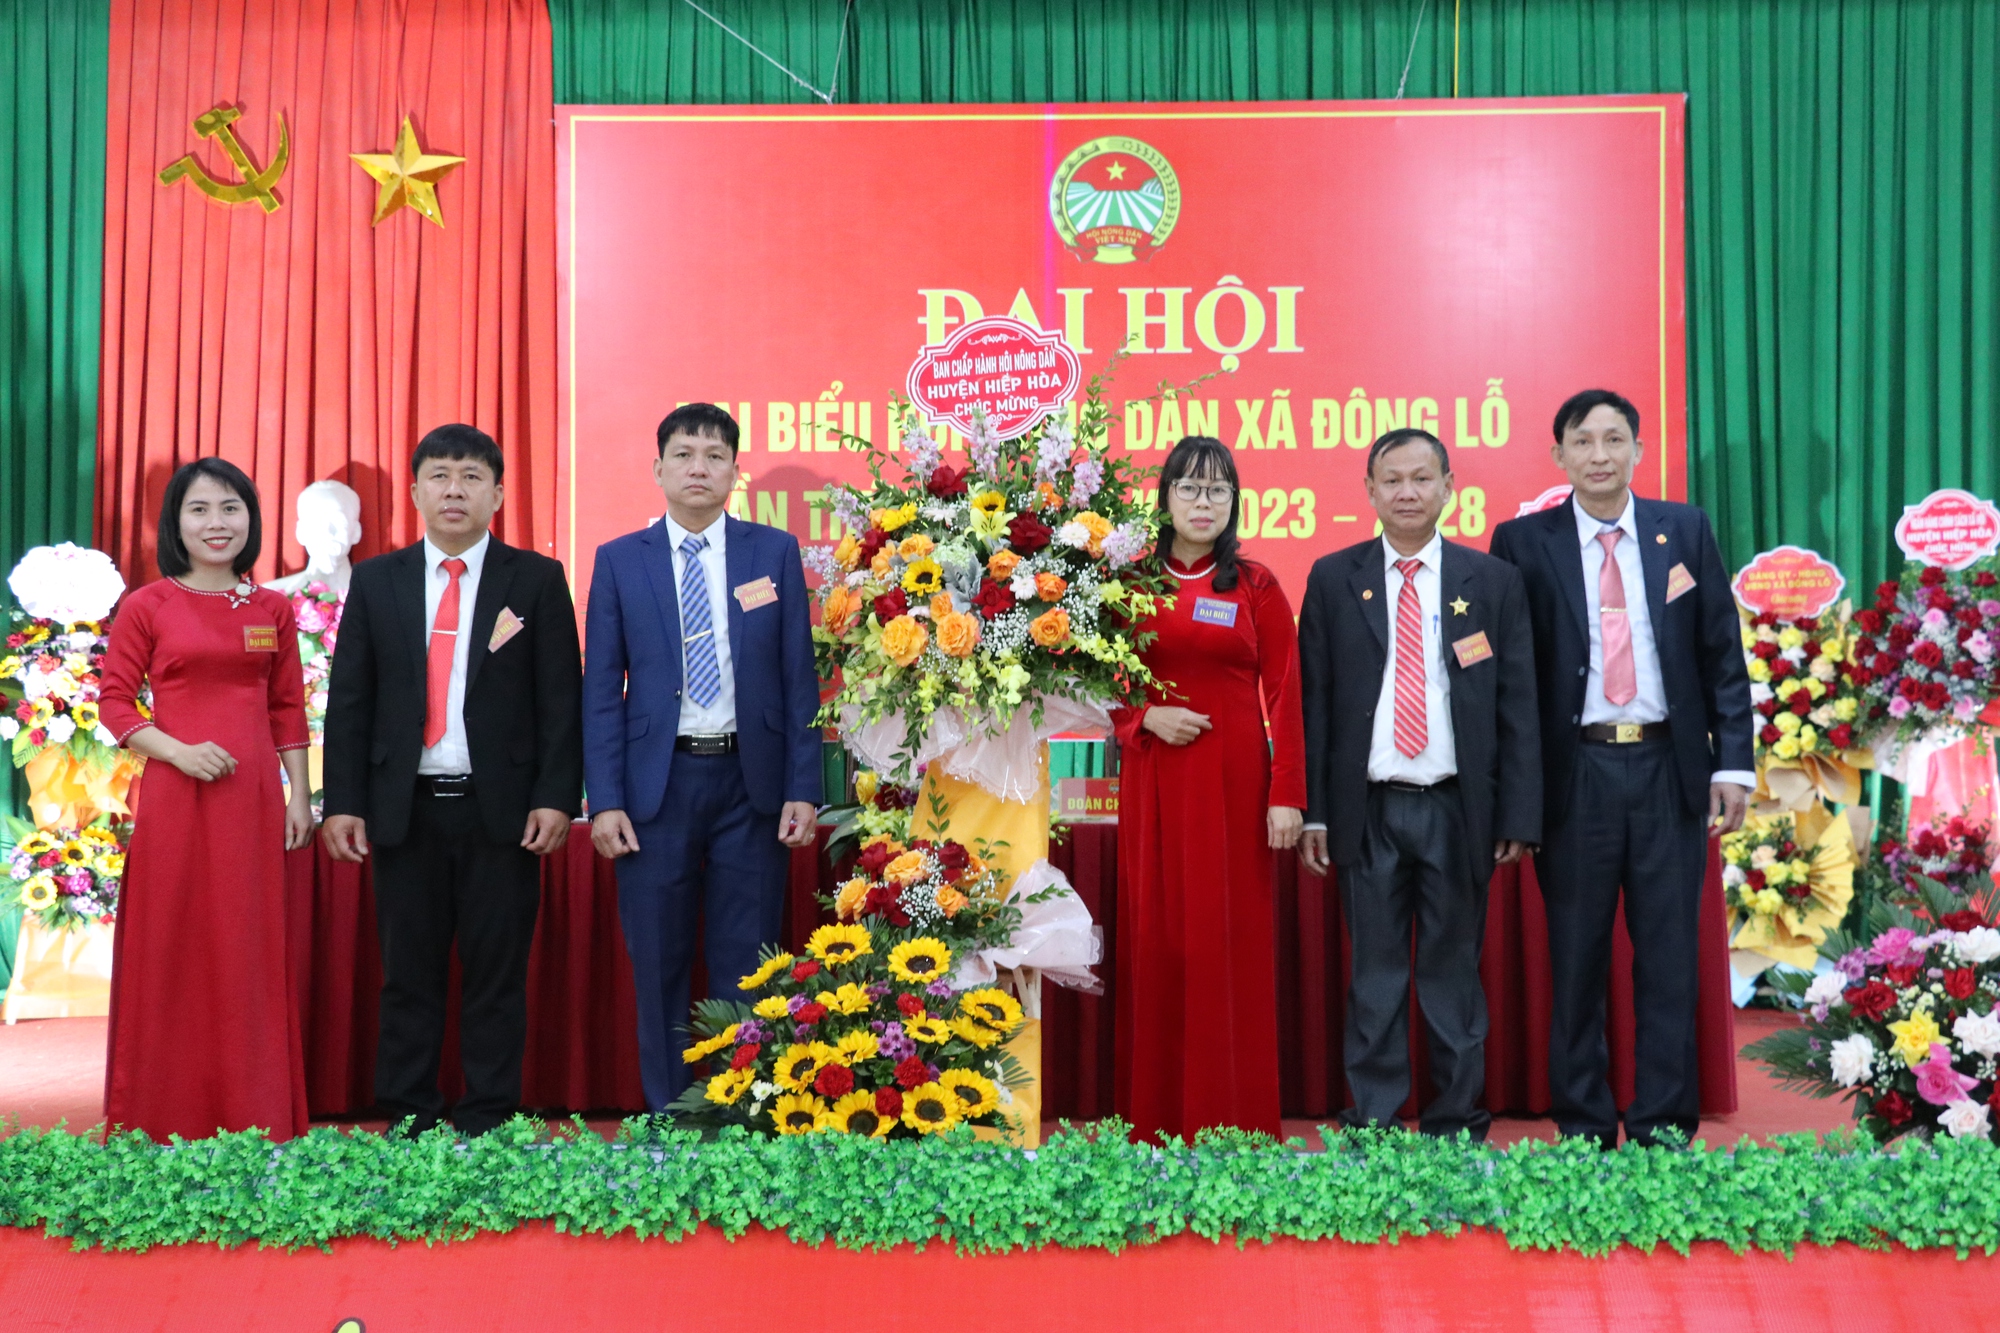 Bắc Giang: Hiệp Hòa hoàn thành ĐHĐB Hội Nông dân cấp cơ sở, hơn 20 công trình của nông dân được xây dựng - Ảnh 1.